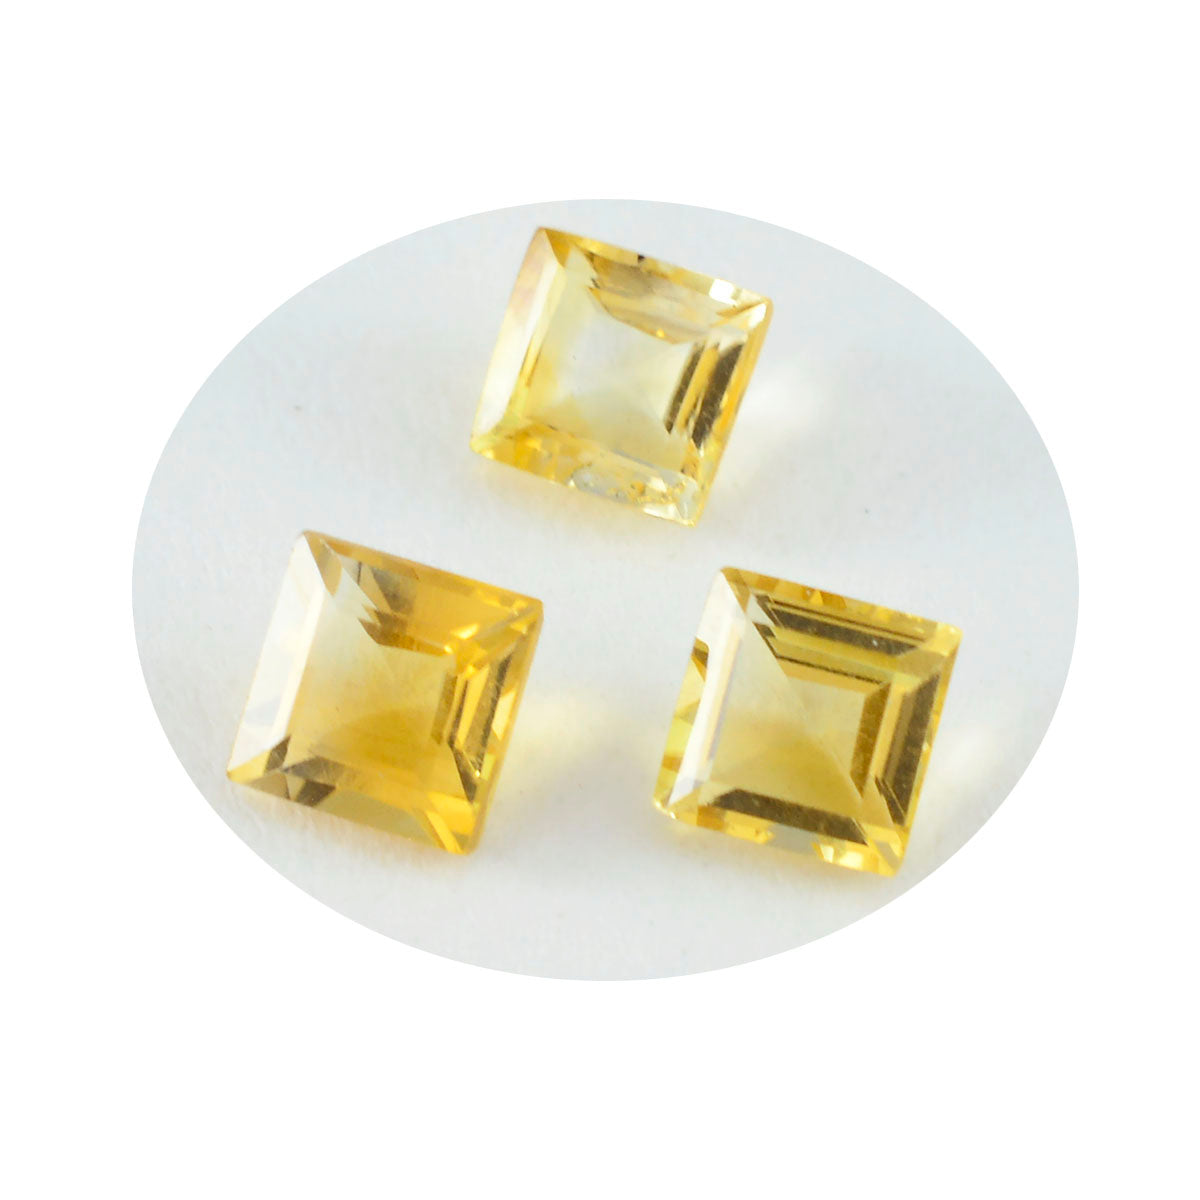 riyogems 1 pz. genuino citrino giallo sfaccettato 8x8 mm, forma quadrata, gemme sfuse di ottima qualità